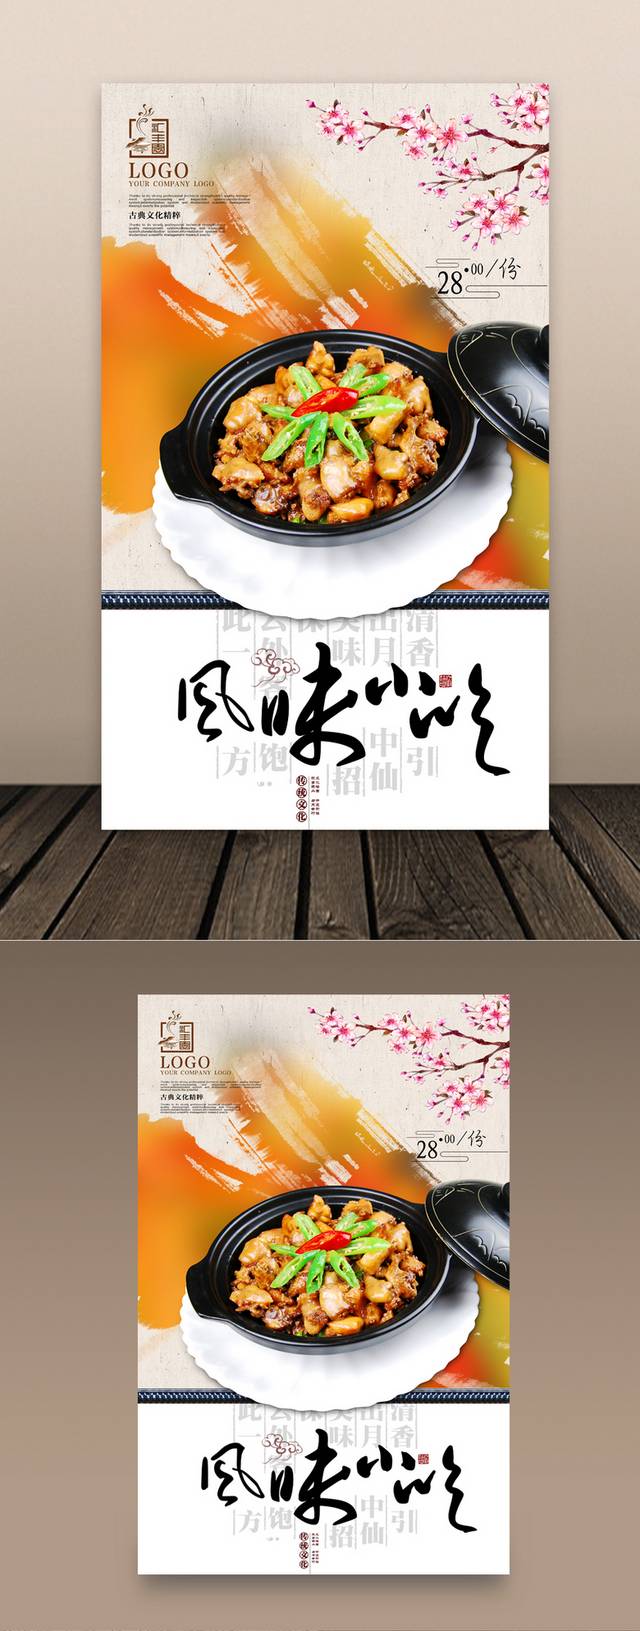 高档石锅鸡宣传海报设计